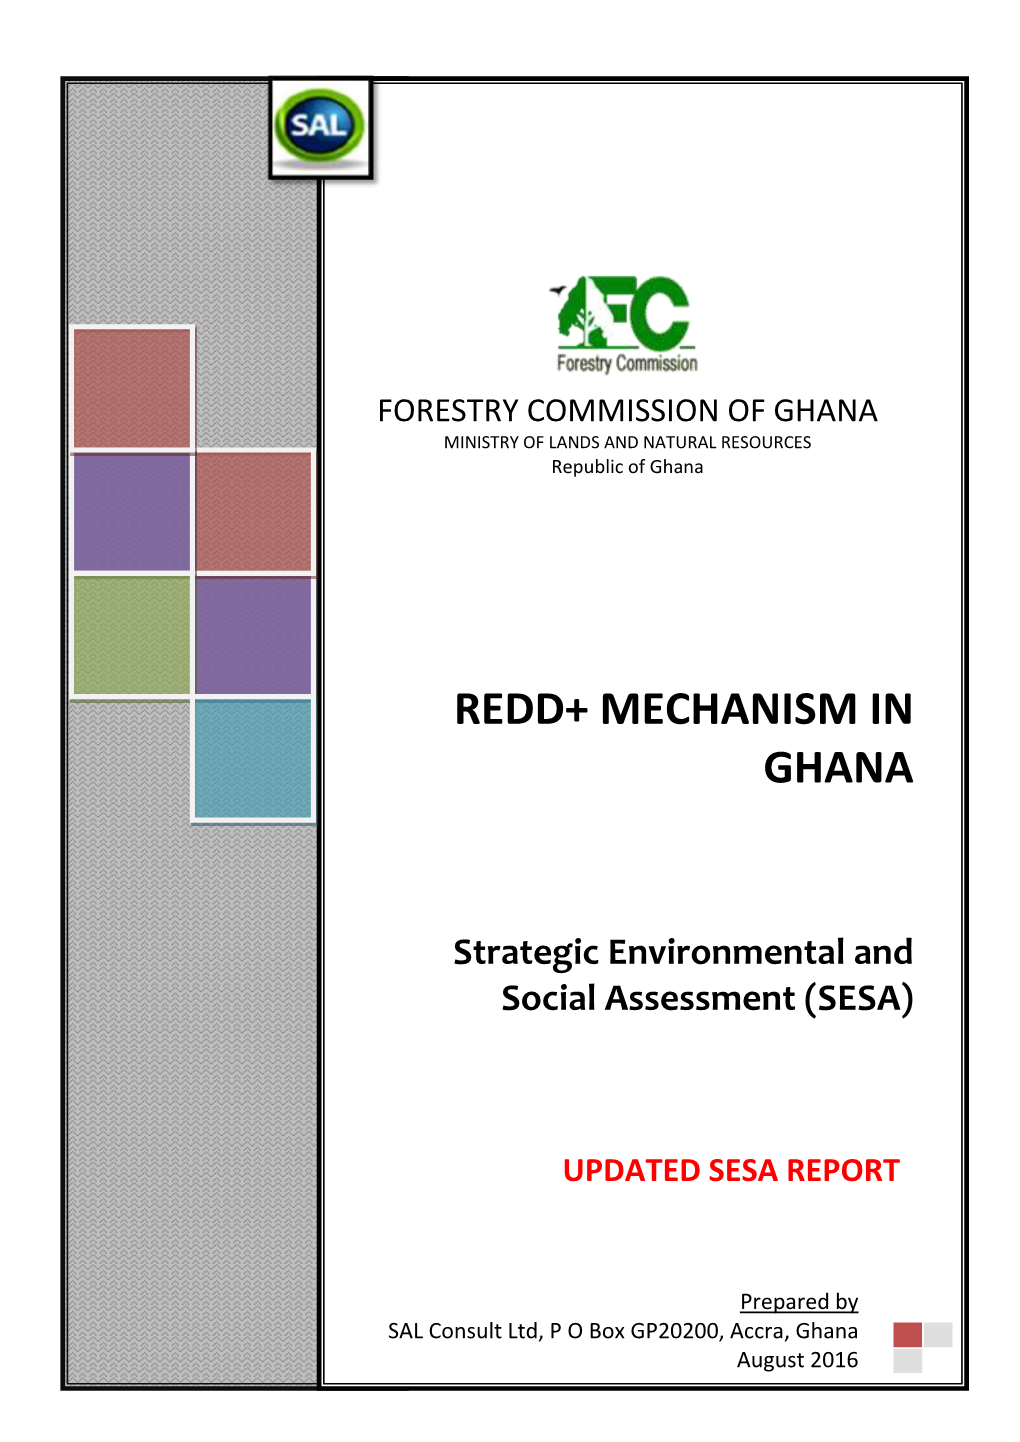 Redd+ Mechanism in Ghana